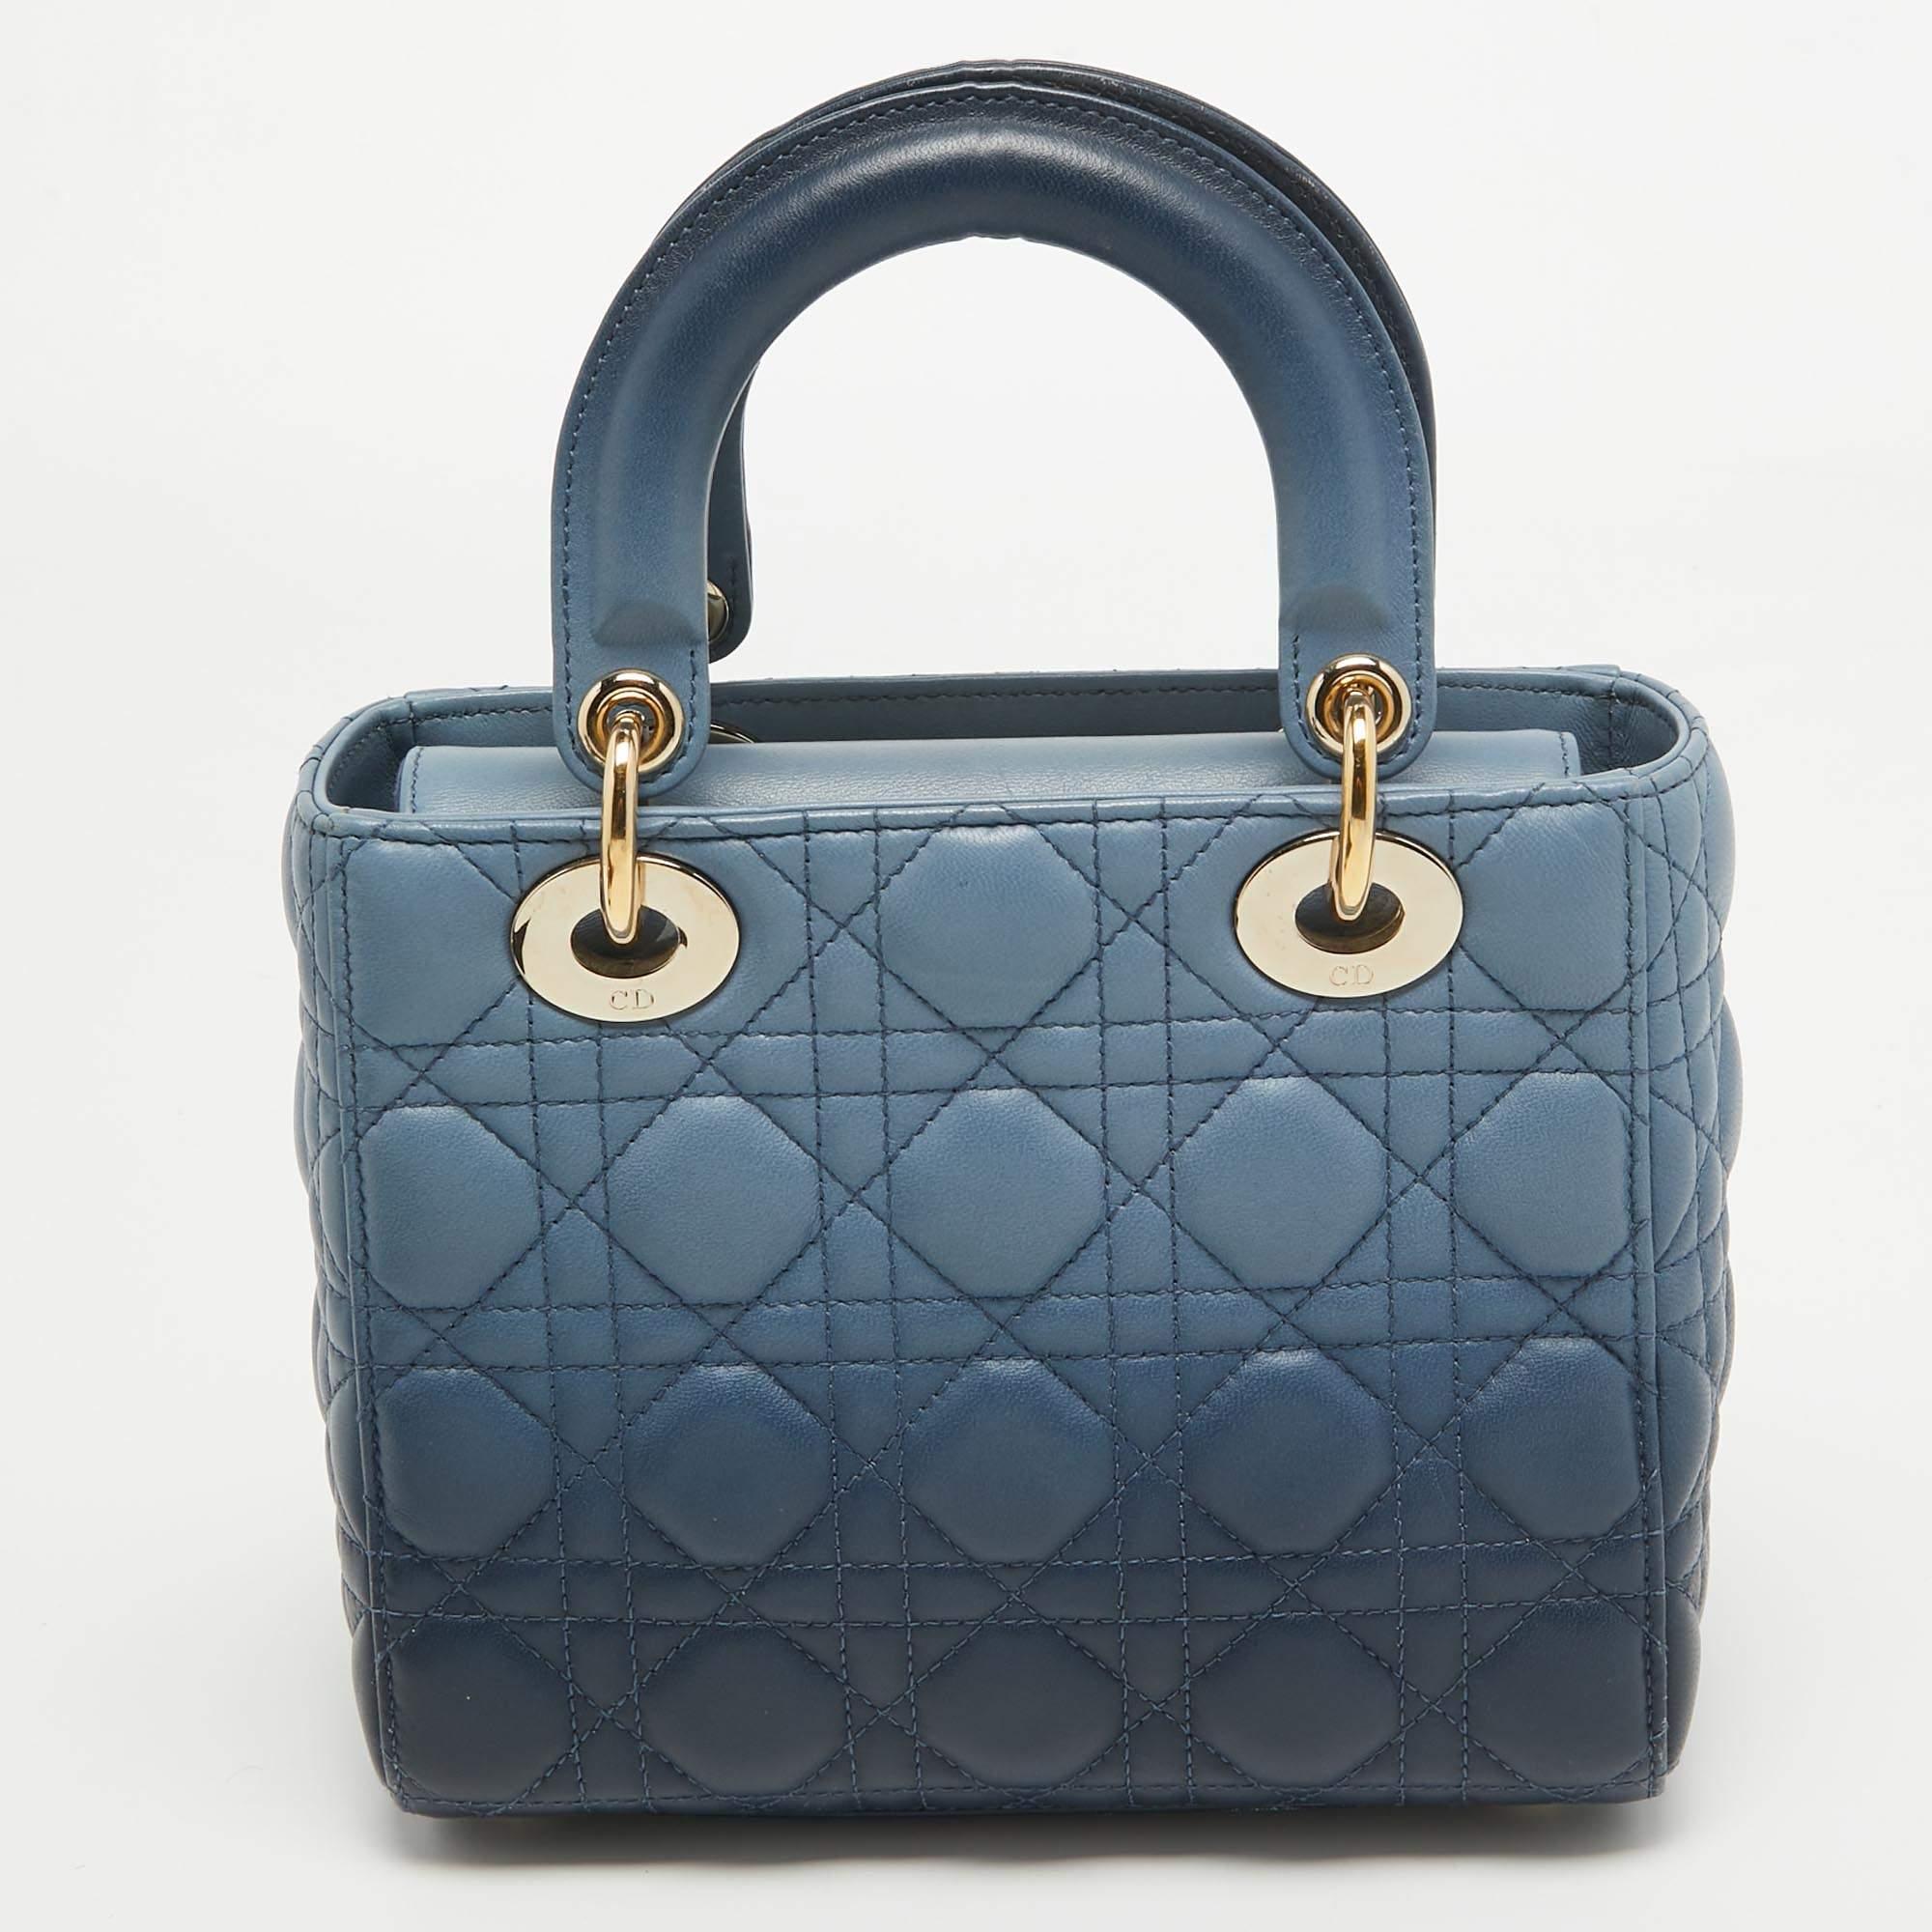 Le sac Lady Dior se distingue par son statut intemporel et son design exceptionnel. Il s'agit d'un sac emblématique dans lequel les gens continuent d'investir à ce jour. Cette beauté classique est réalisée en cuir Cannage bleu ombré. Le sac est doté